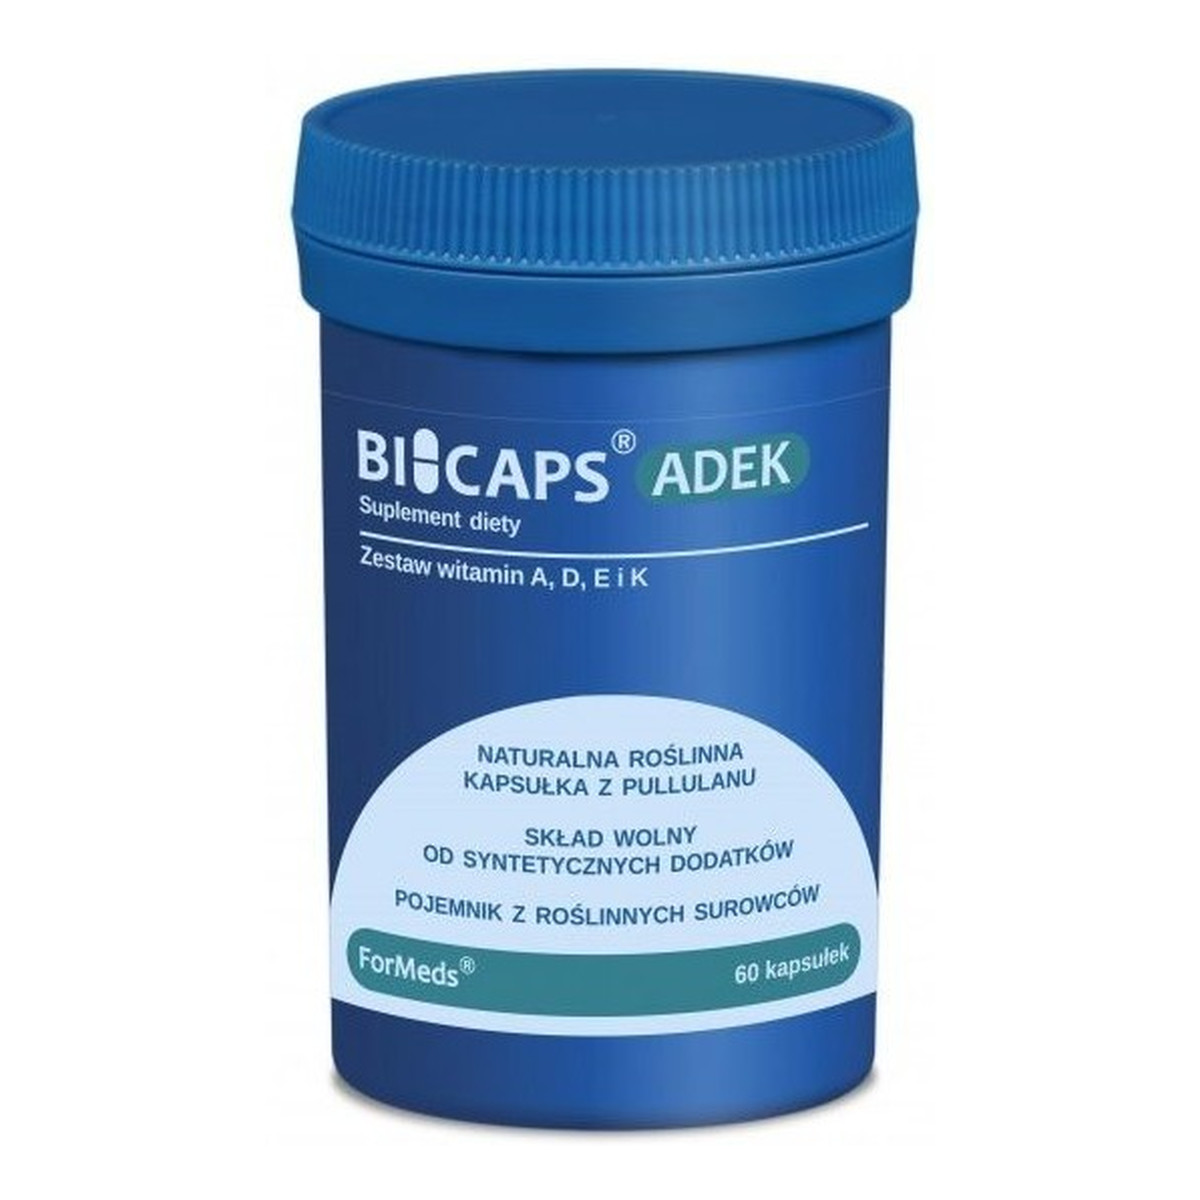 Formeds Bicaps ADEK zestaw witamin A D E K suplement diety 60 kapsułek